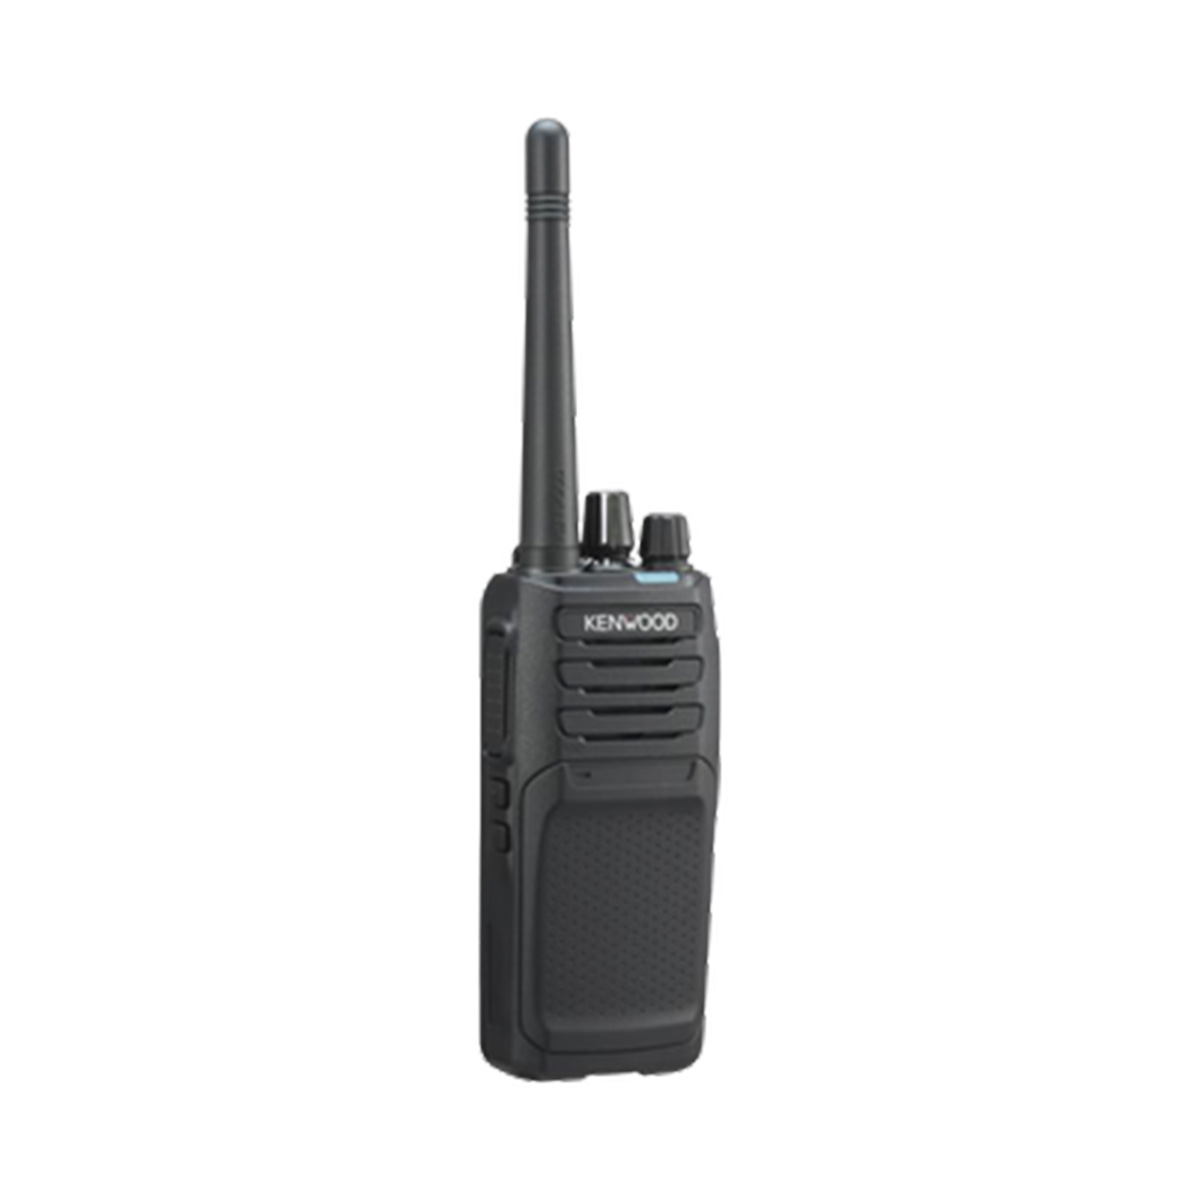 Radio KENWOOD NX-1300-DK4-IS Digital UHF 400-470 MHz sin pantalla y sin teclado intrínsecamente seguro